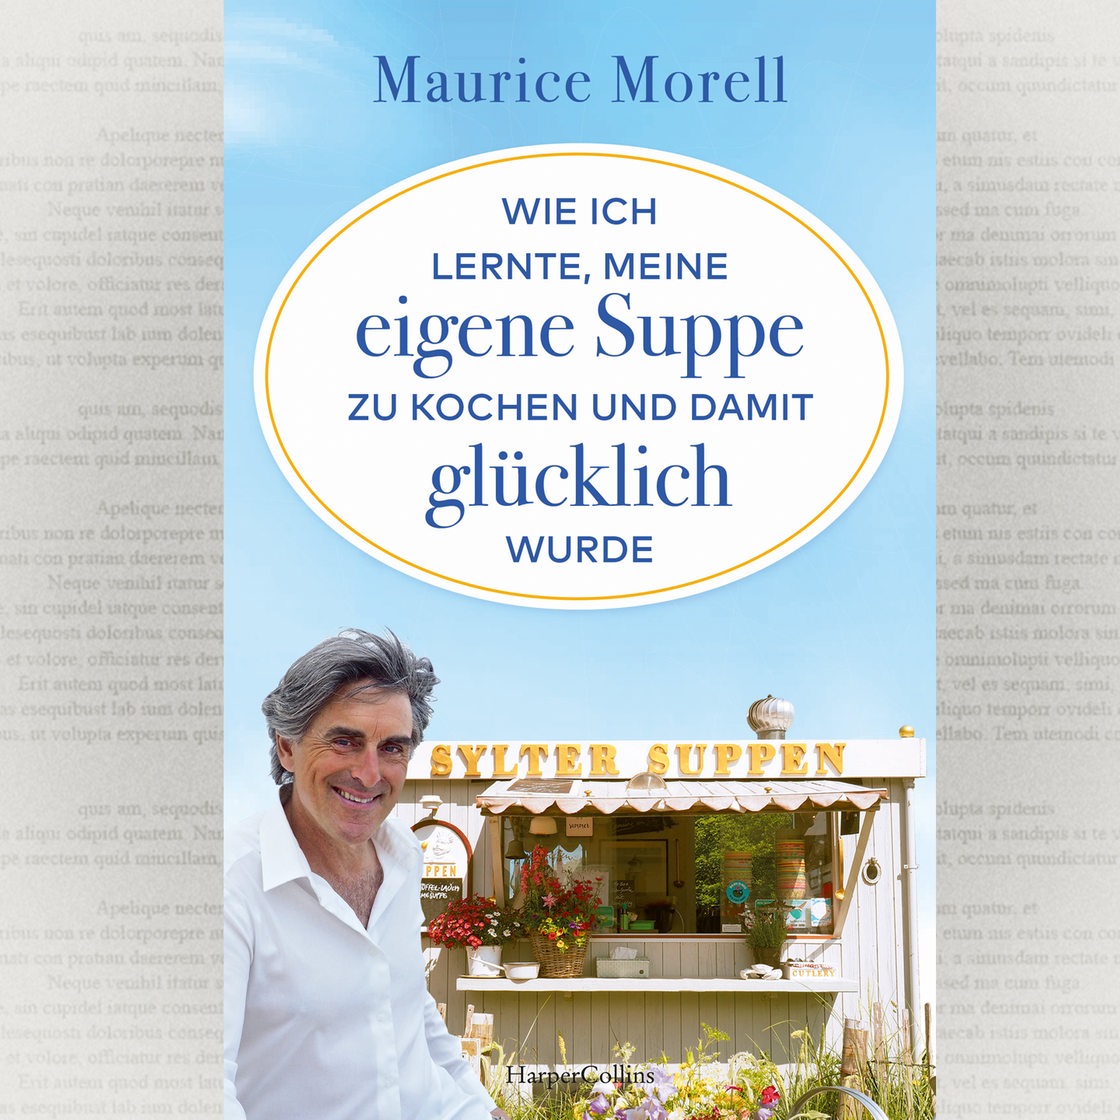 Buchcover von Maurice Morell "Wie ich lernte meine eigene Suppe zu kochen"